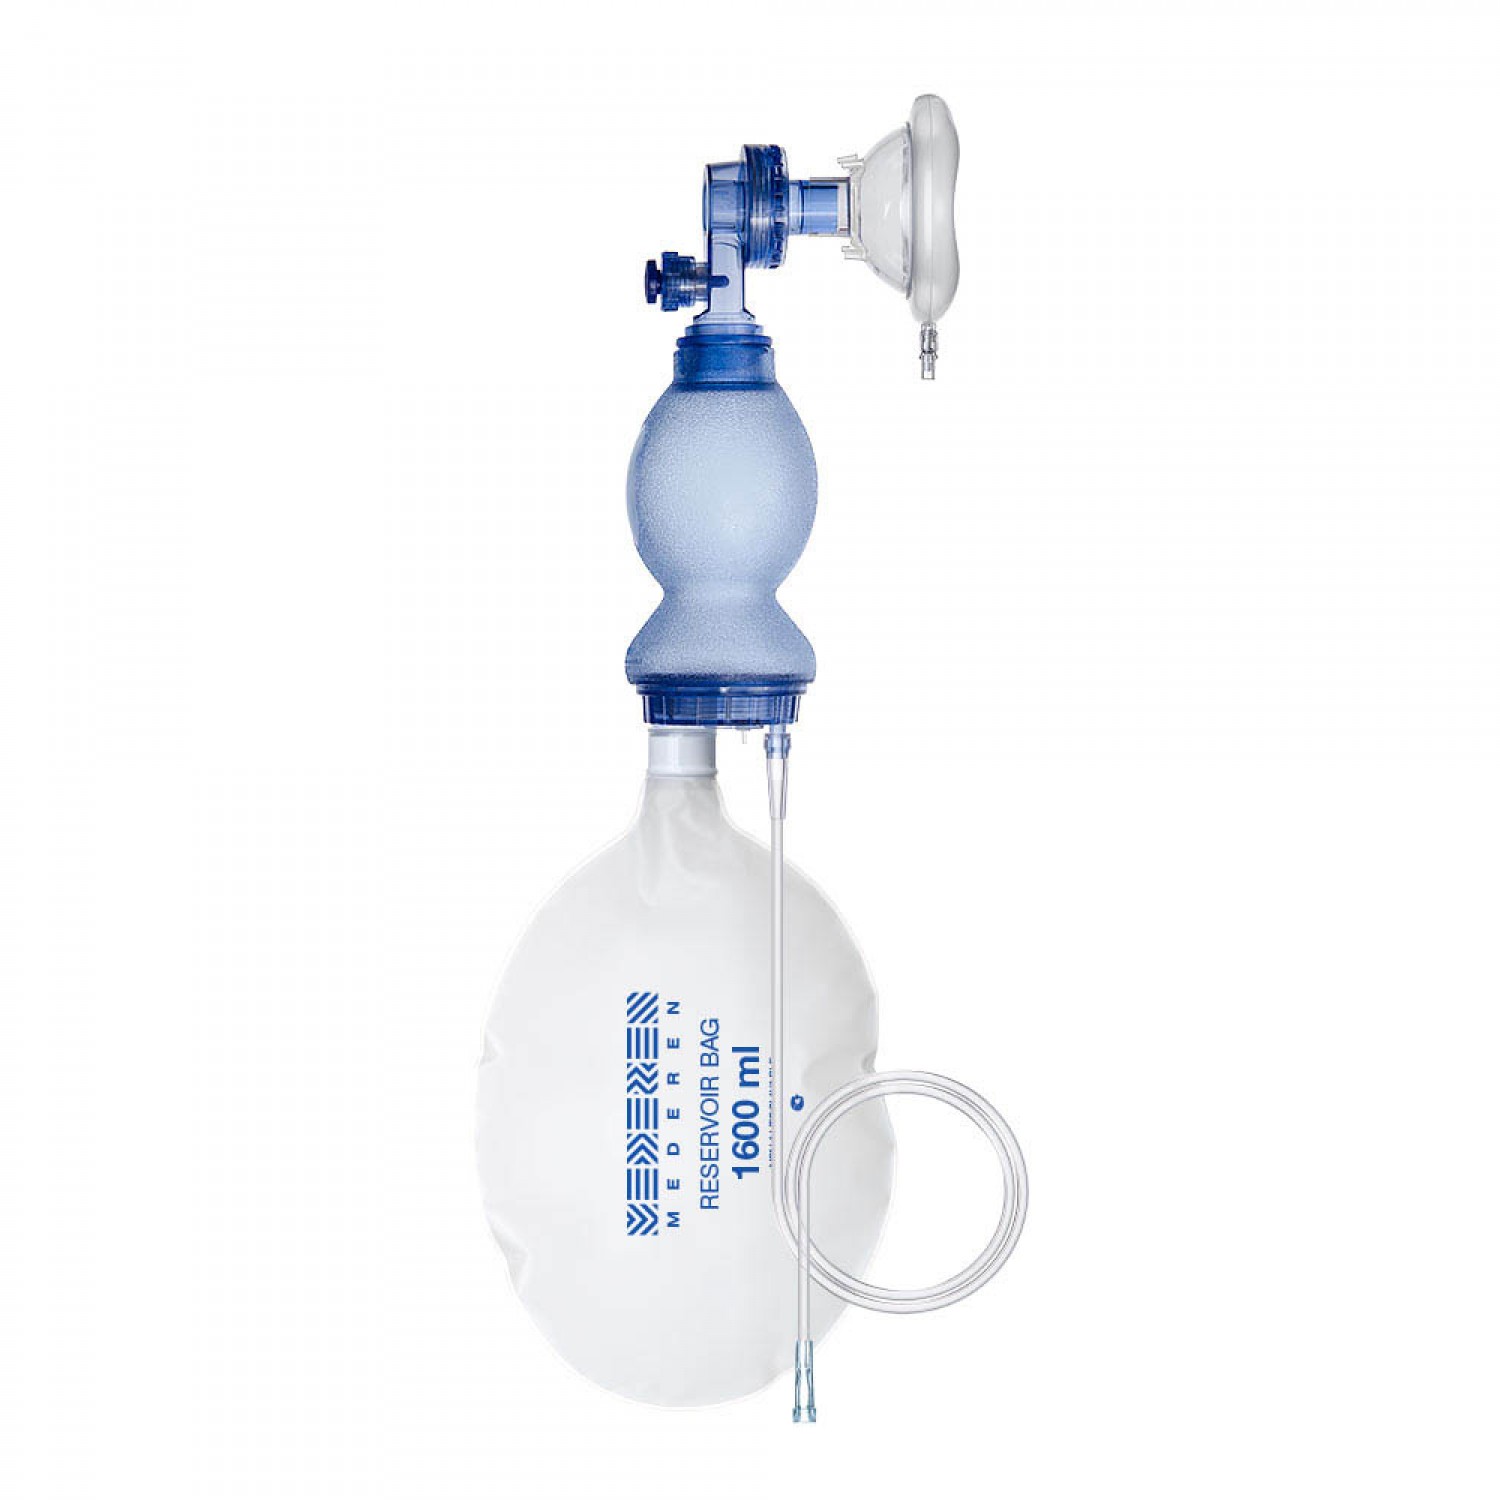 Manual Artificial lung ventilation device (Ambu Bag) 17